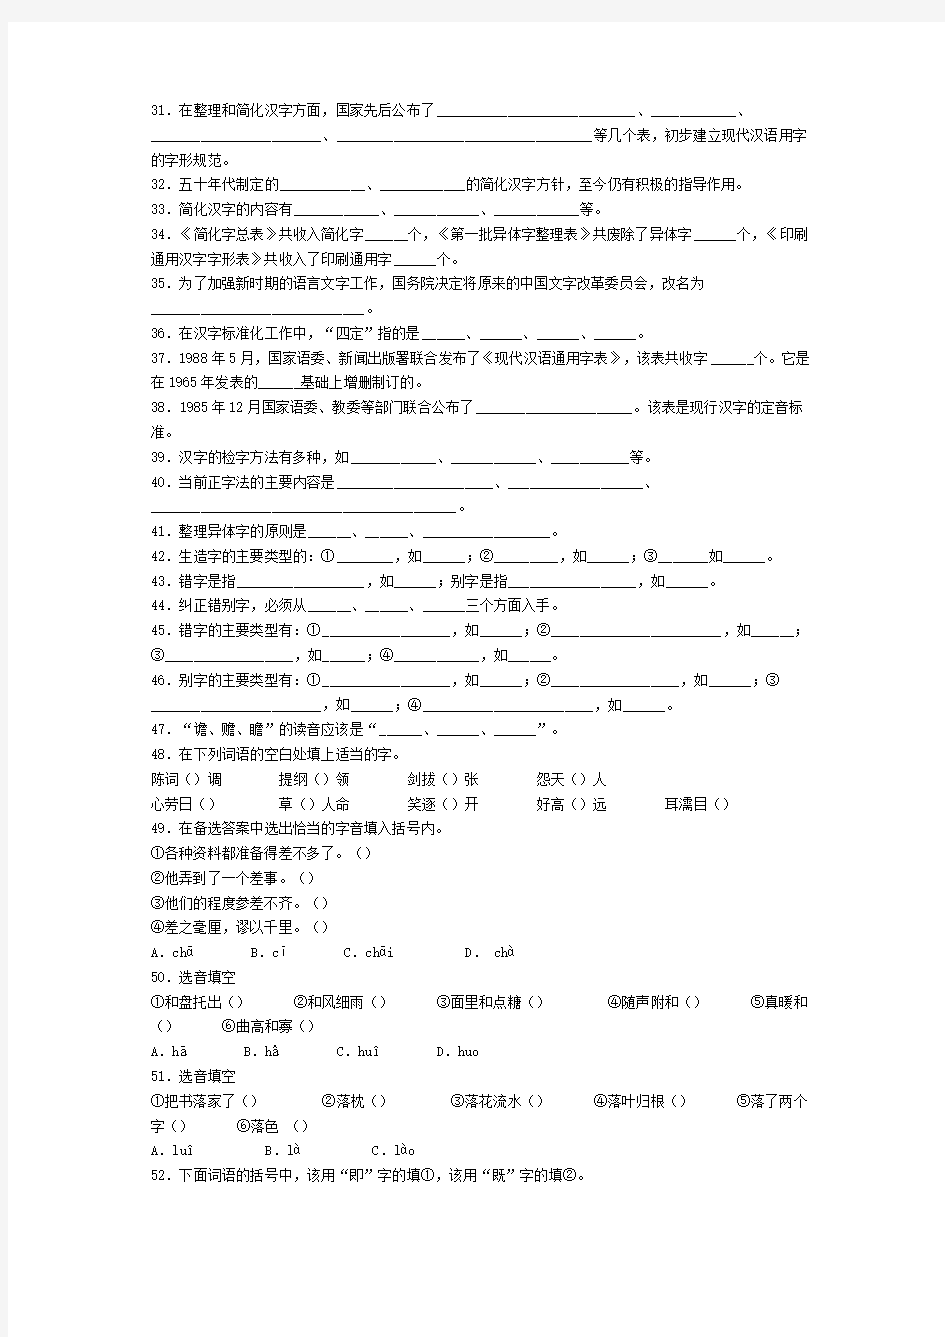 大一现代汉语考试文字题期末考试复习